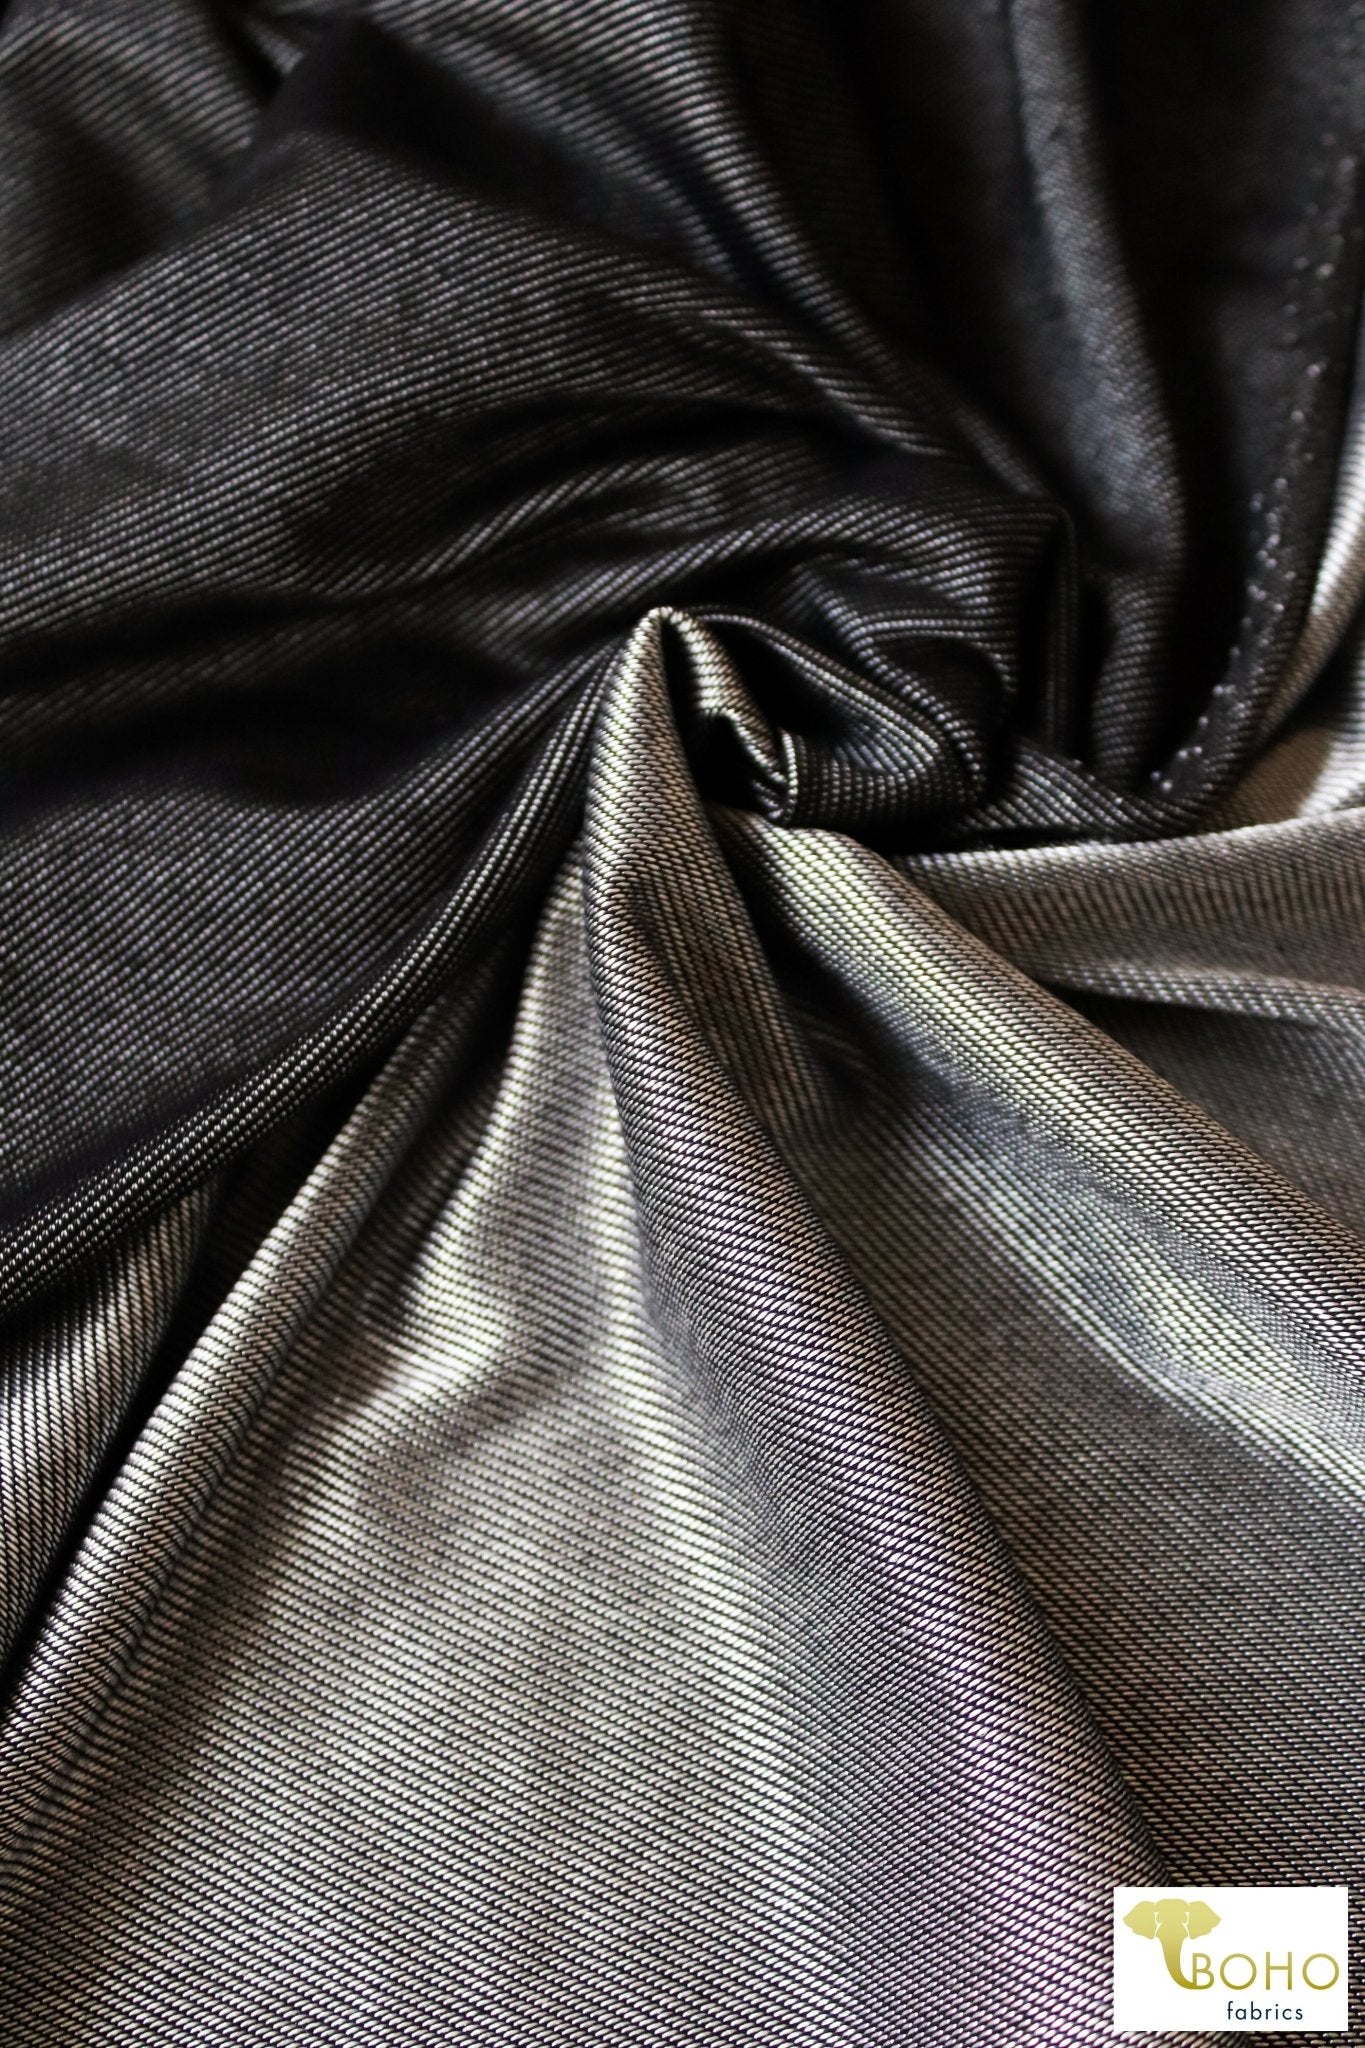 Black & Silver, Athletic Stretch Denim. ATH-135 - Boho Fabrics